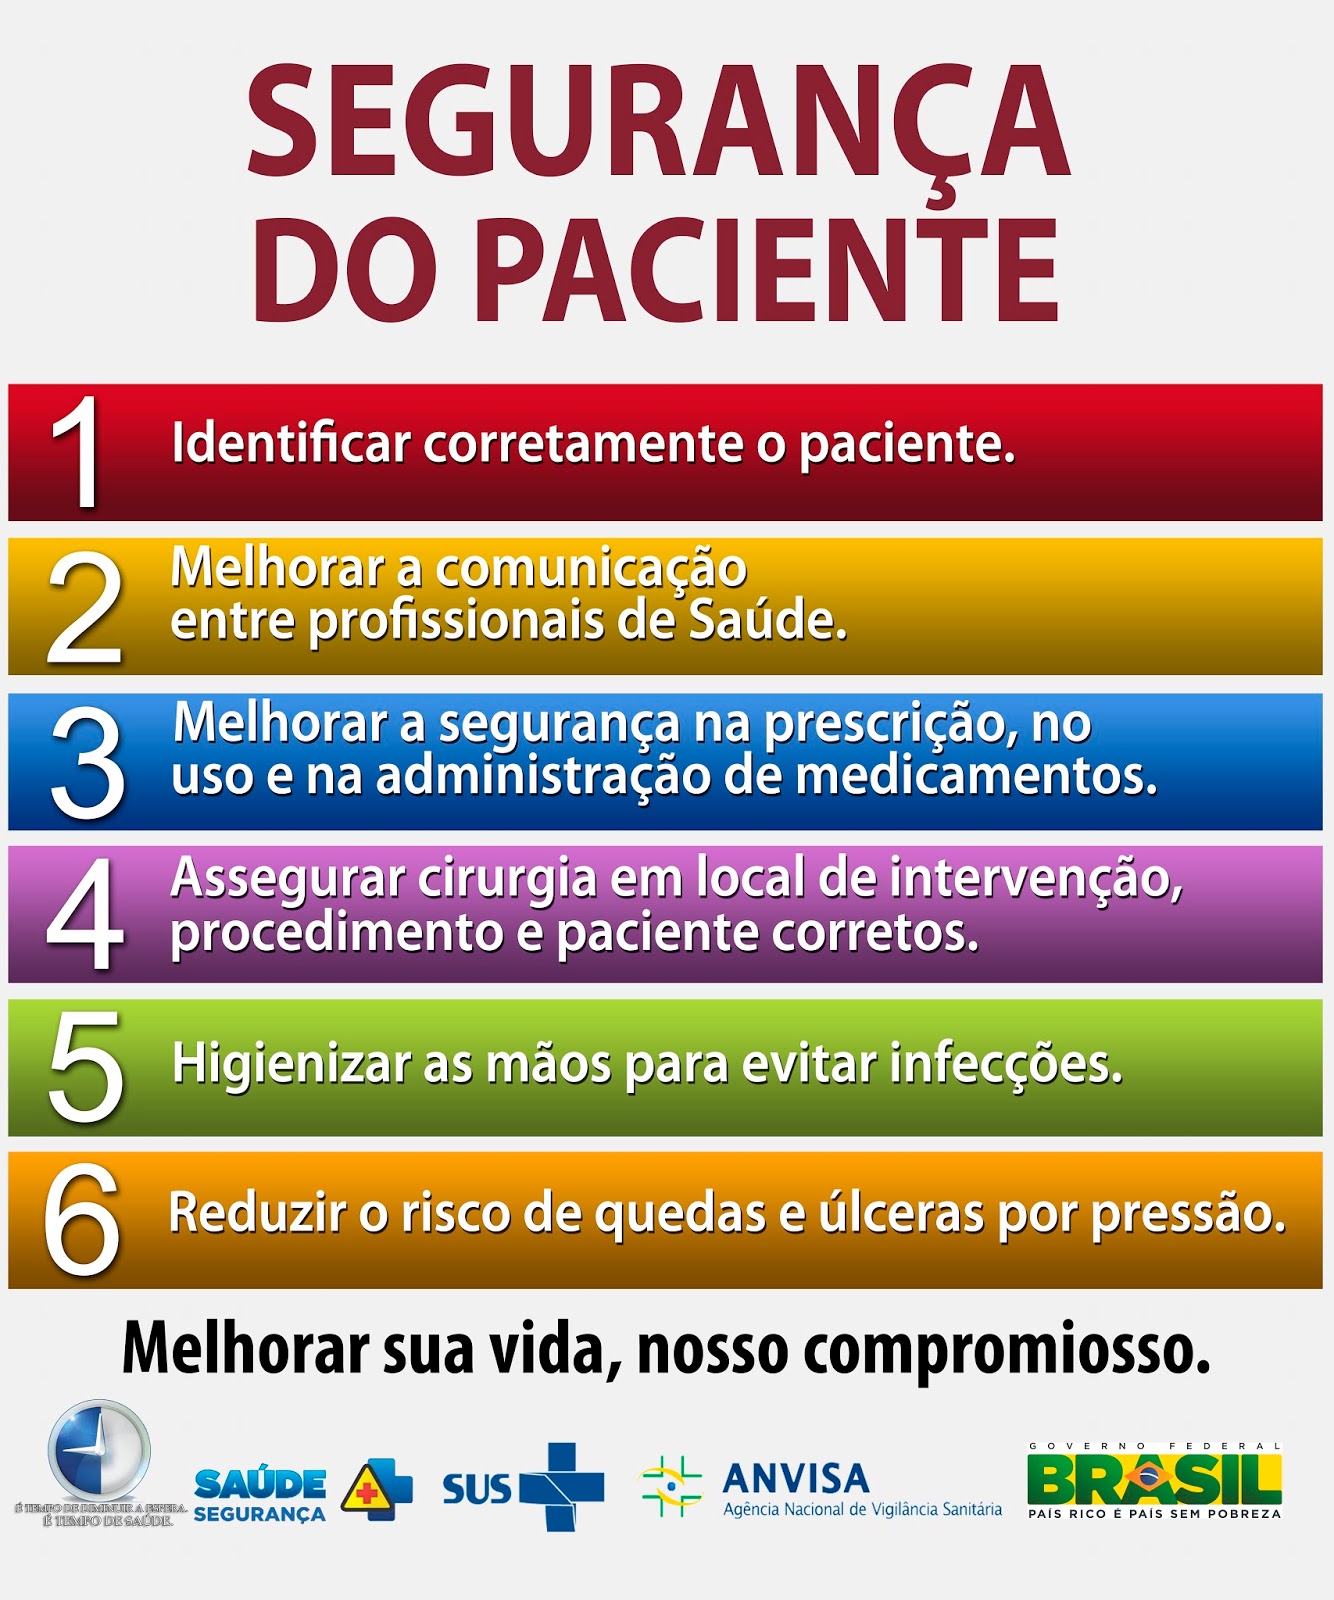 NÚCLEO DE SEGURANÇA DO PACIENTE-HMFST ~ Centro de Estudos Hospital